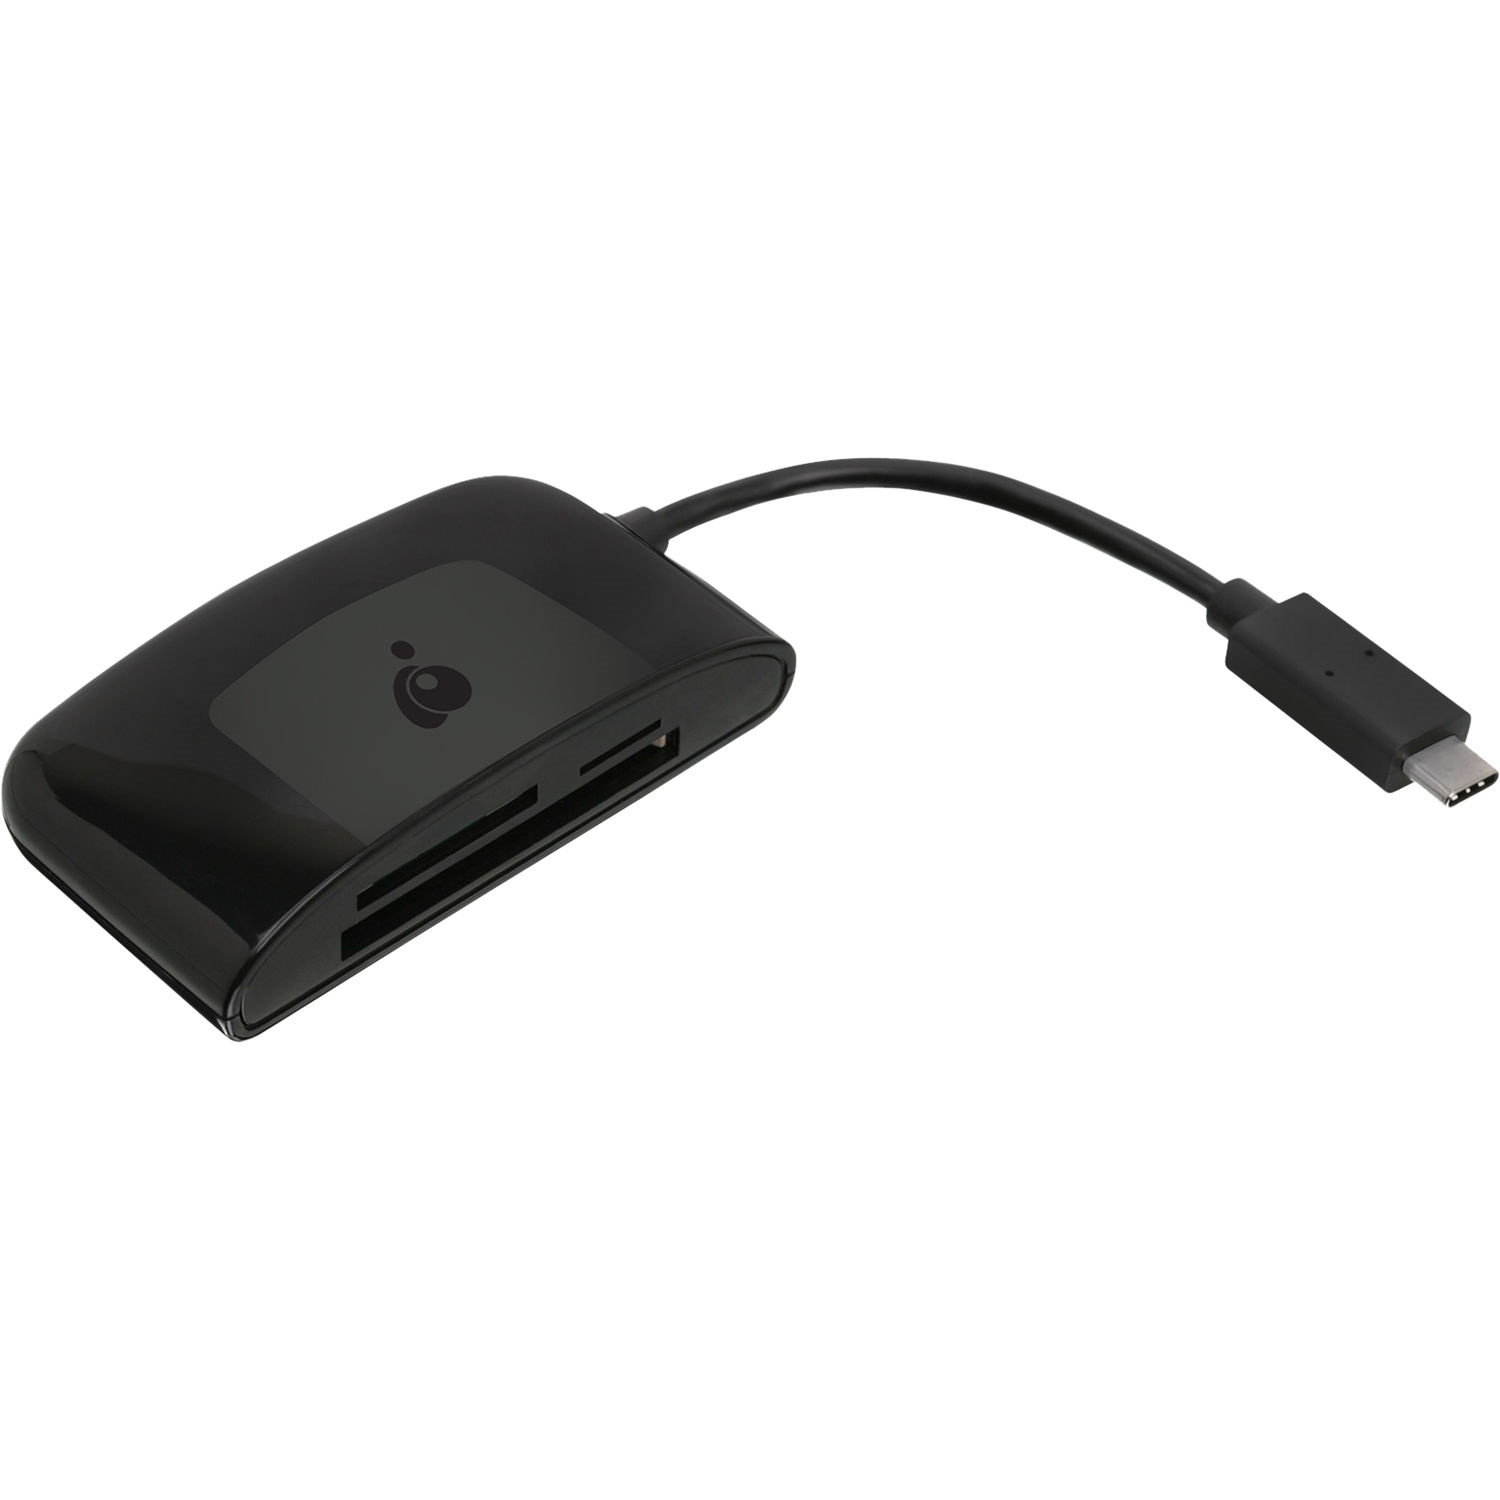 IOGEAR 3-Slot USB 3.1 Gen 1 Type-C Card Reader